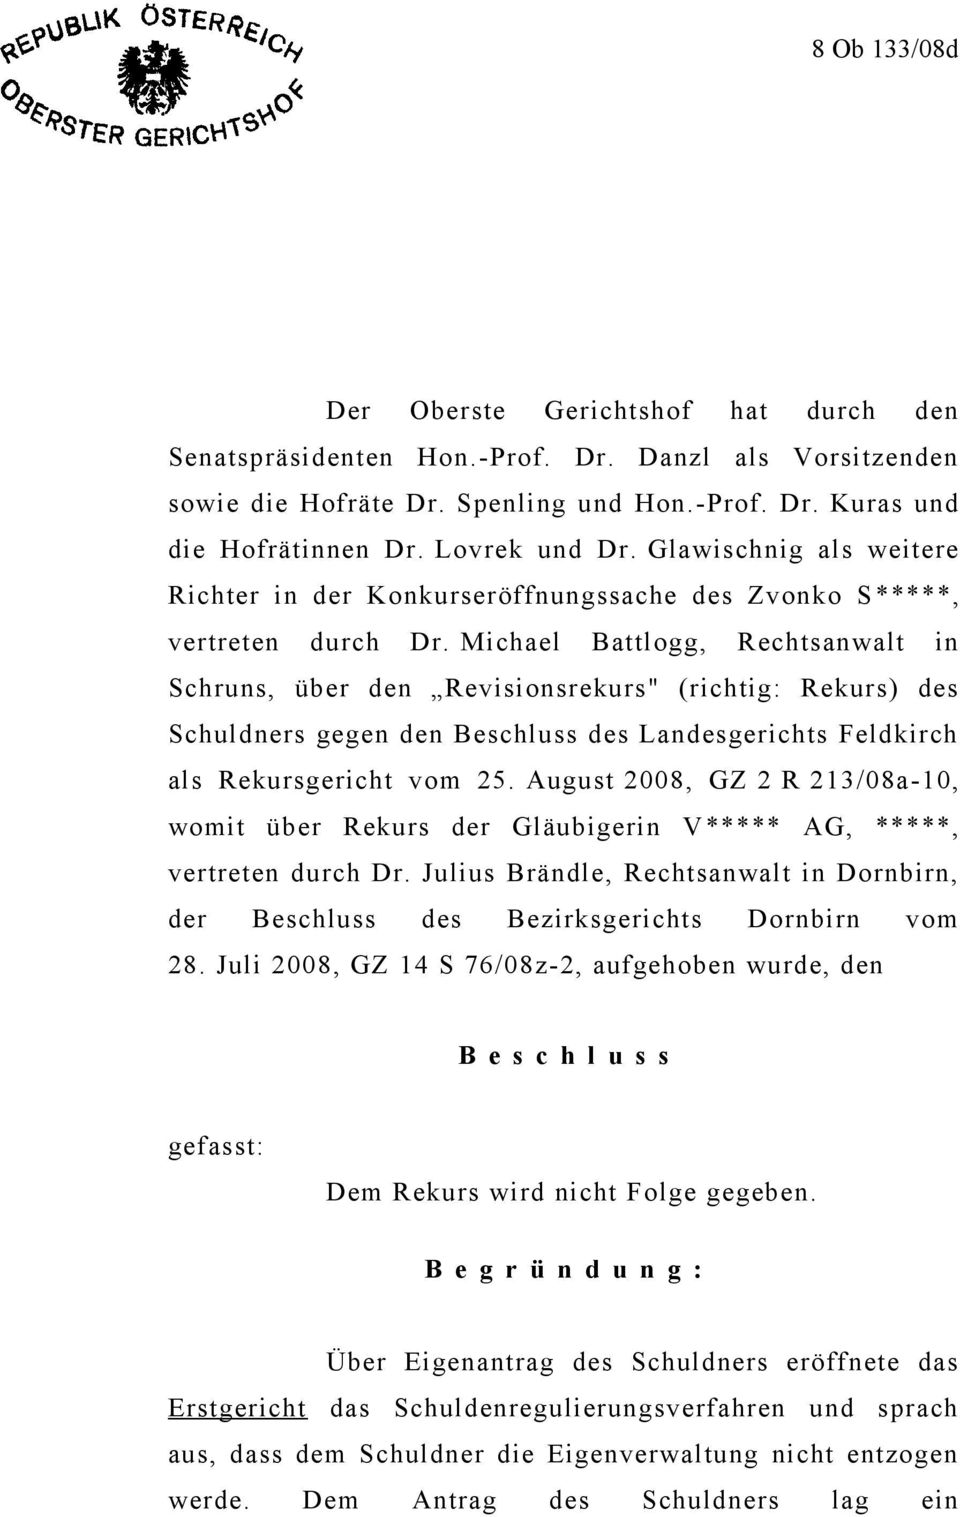 Michael Battlogg, Rechtsanwalt in Schruns, über den Revisionsrekurs" (richtig: Rekurs) des Schuldners gegen den Beschluss des Landesgerichts Feldkirch als Rekursgericht vom 25.